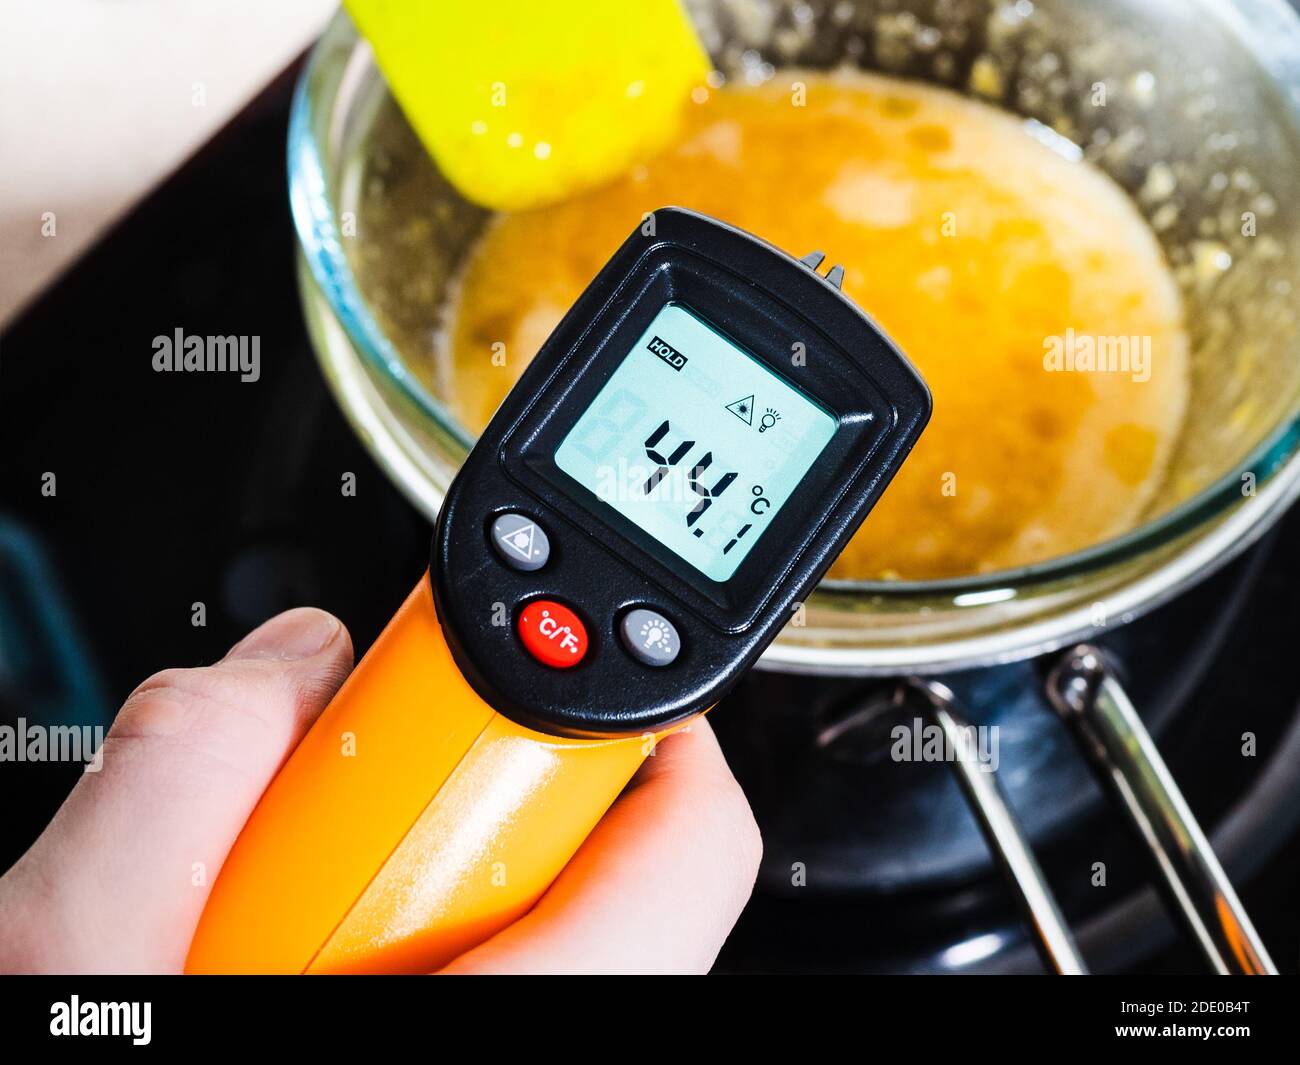 Kochen süßer Biskuitkuchen zu Hause - Messung der Temperatur von